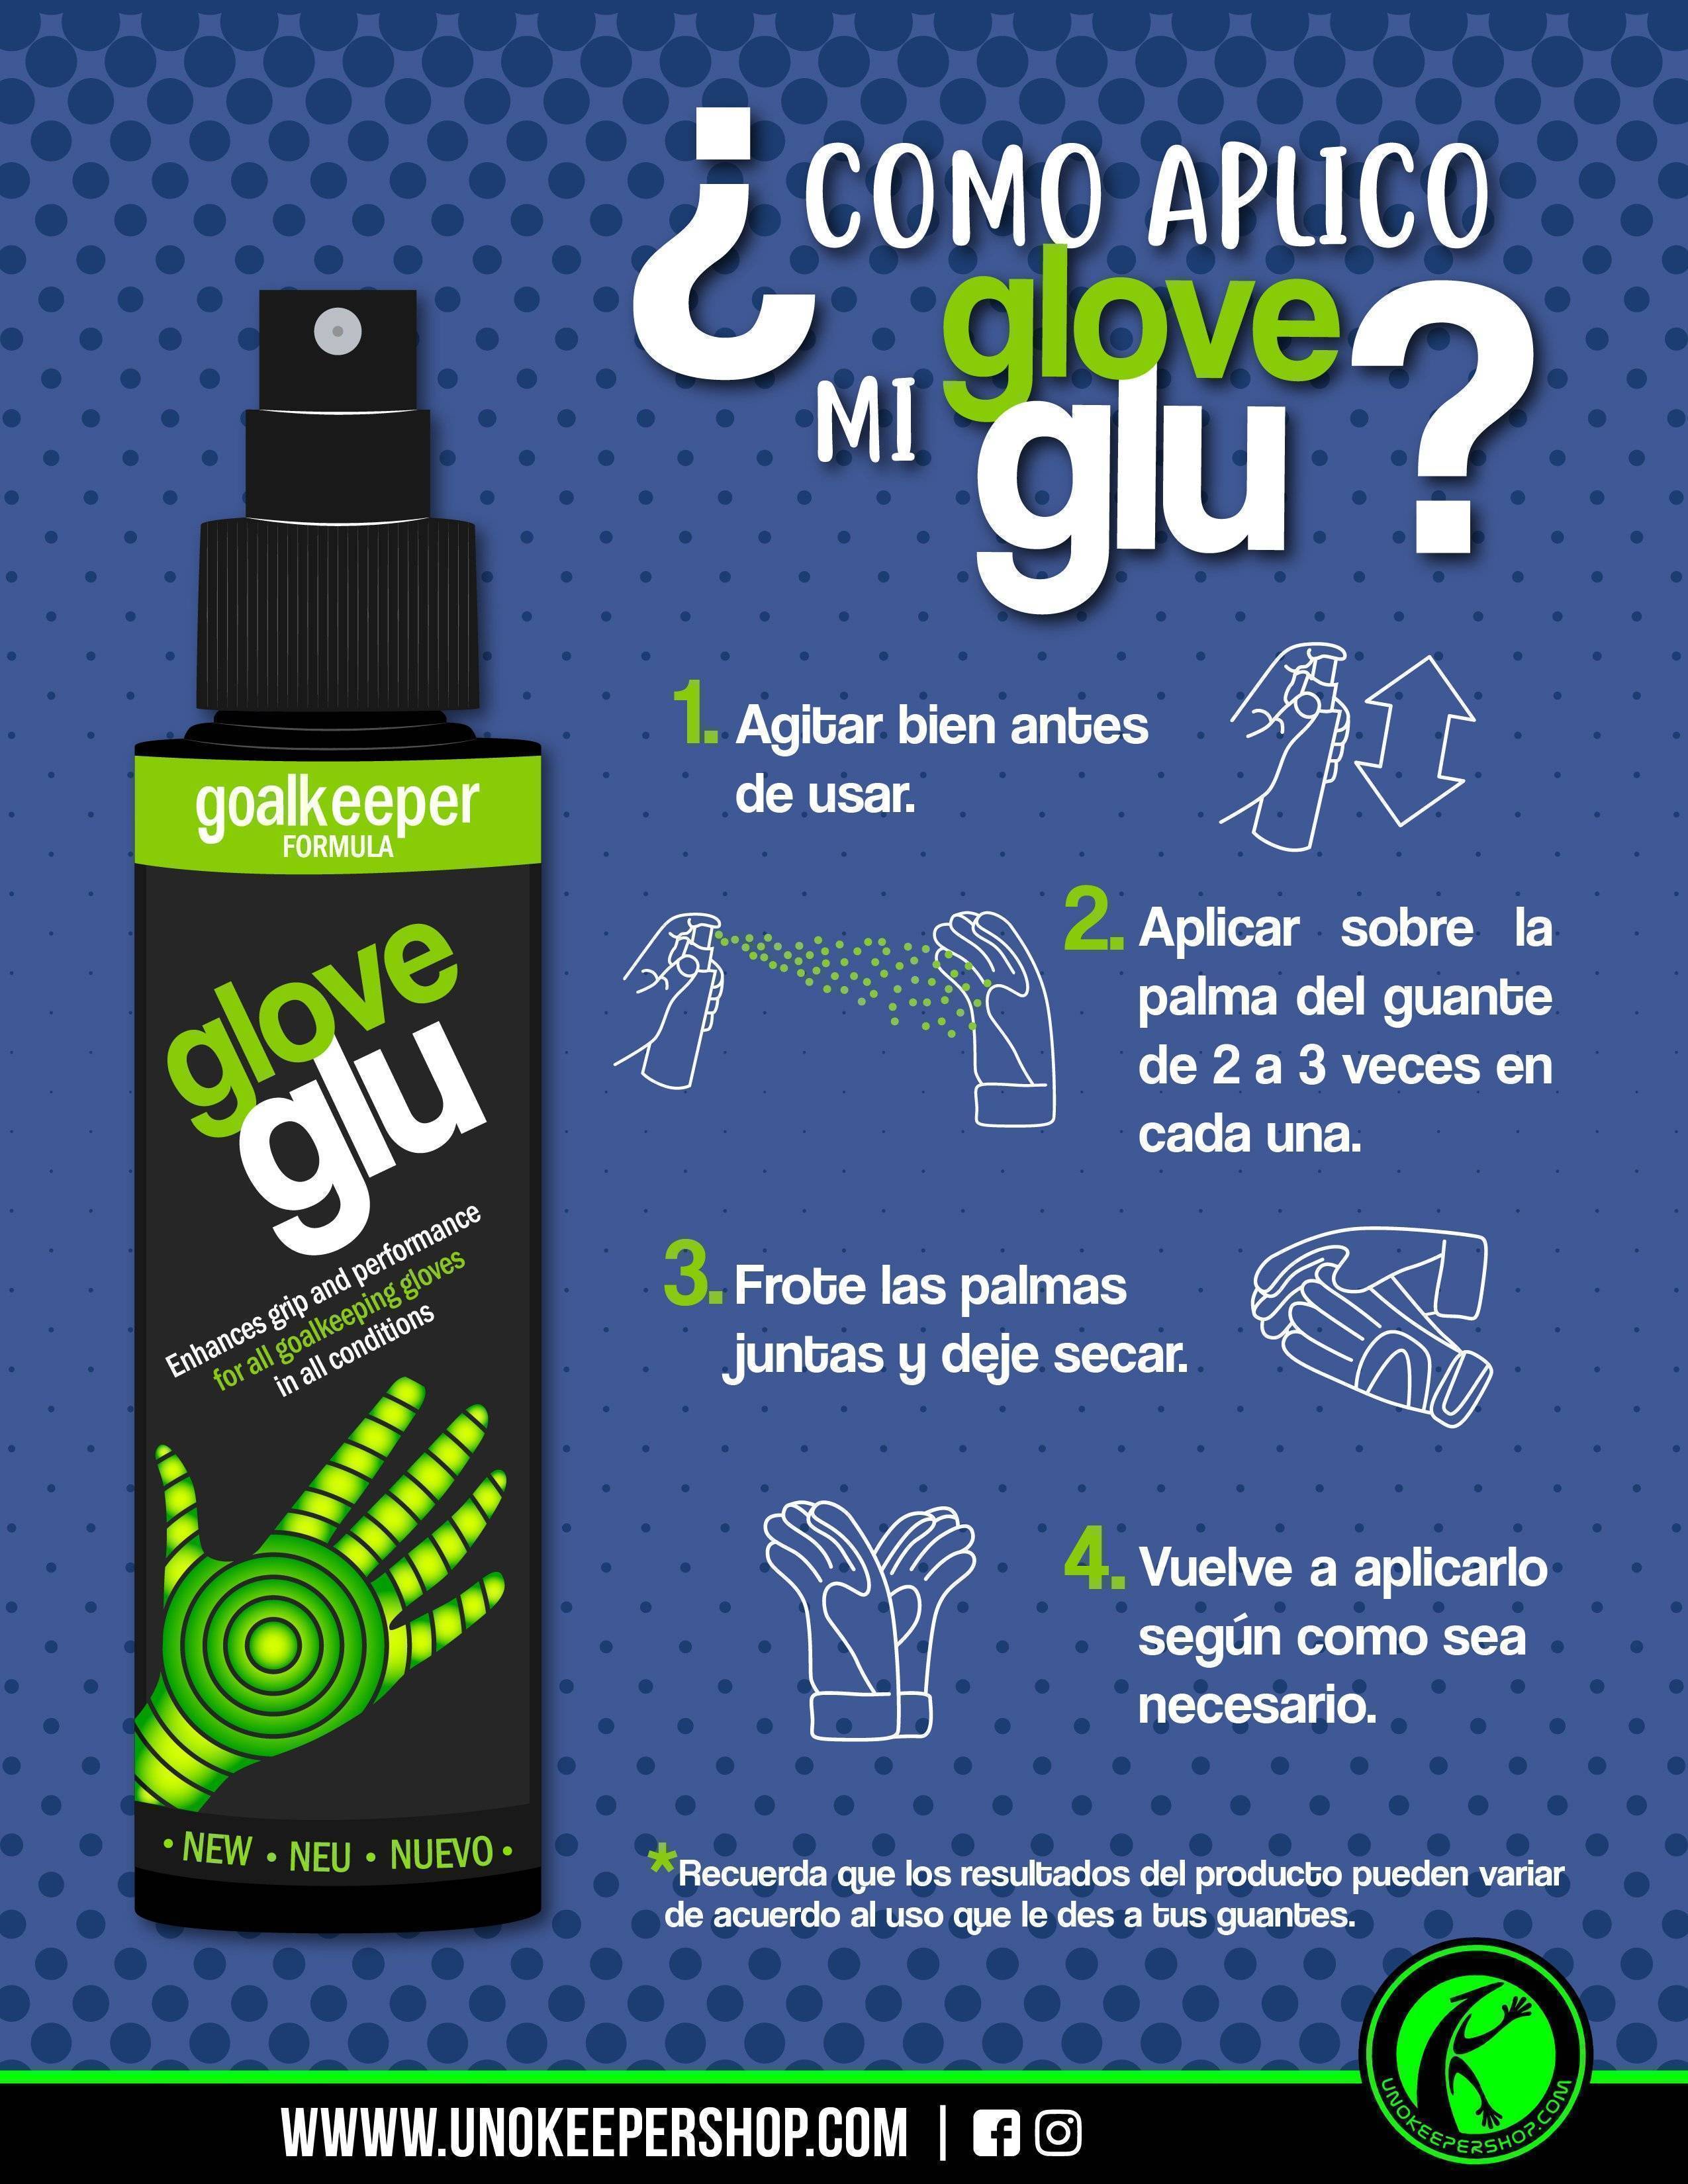 Glove Glu Latex Liquido